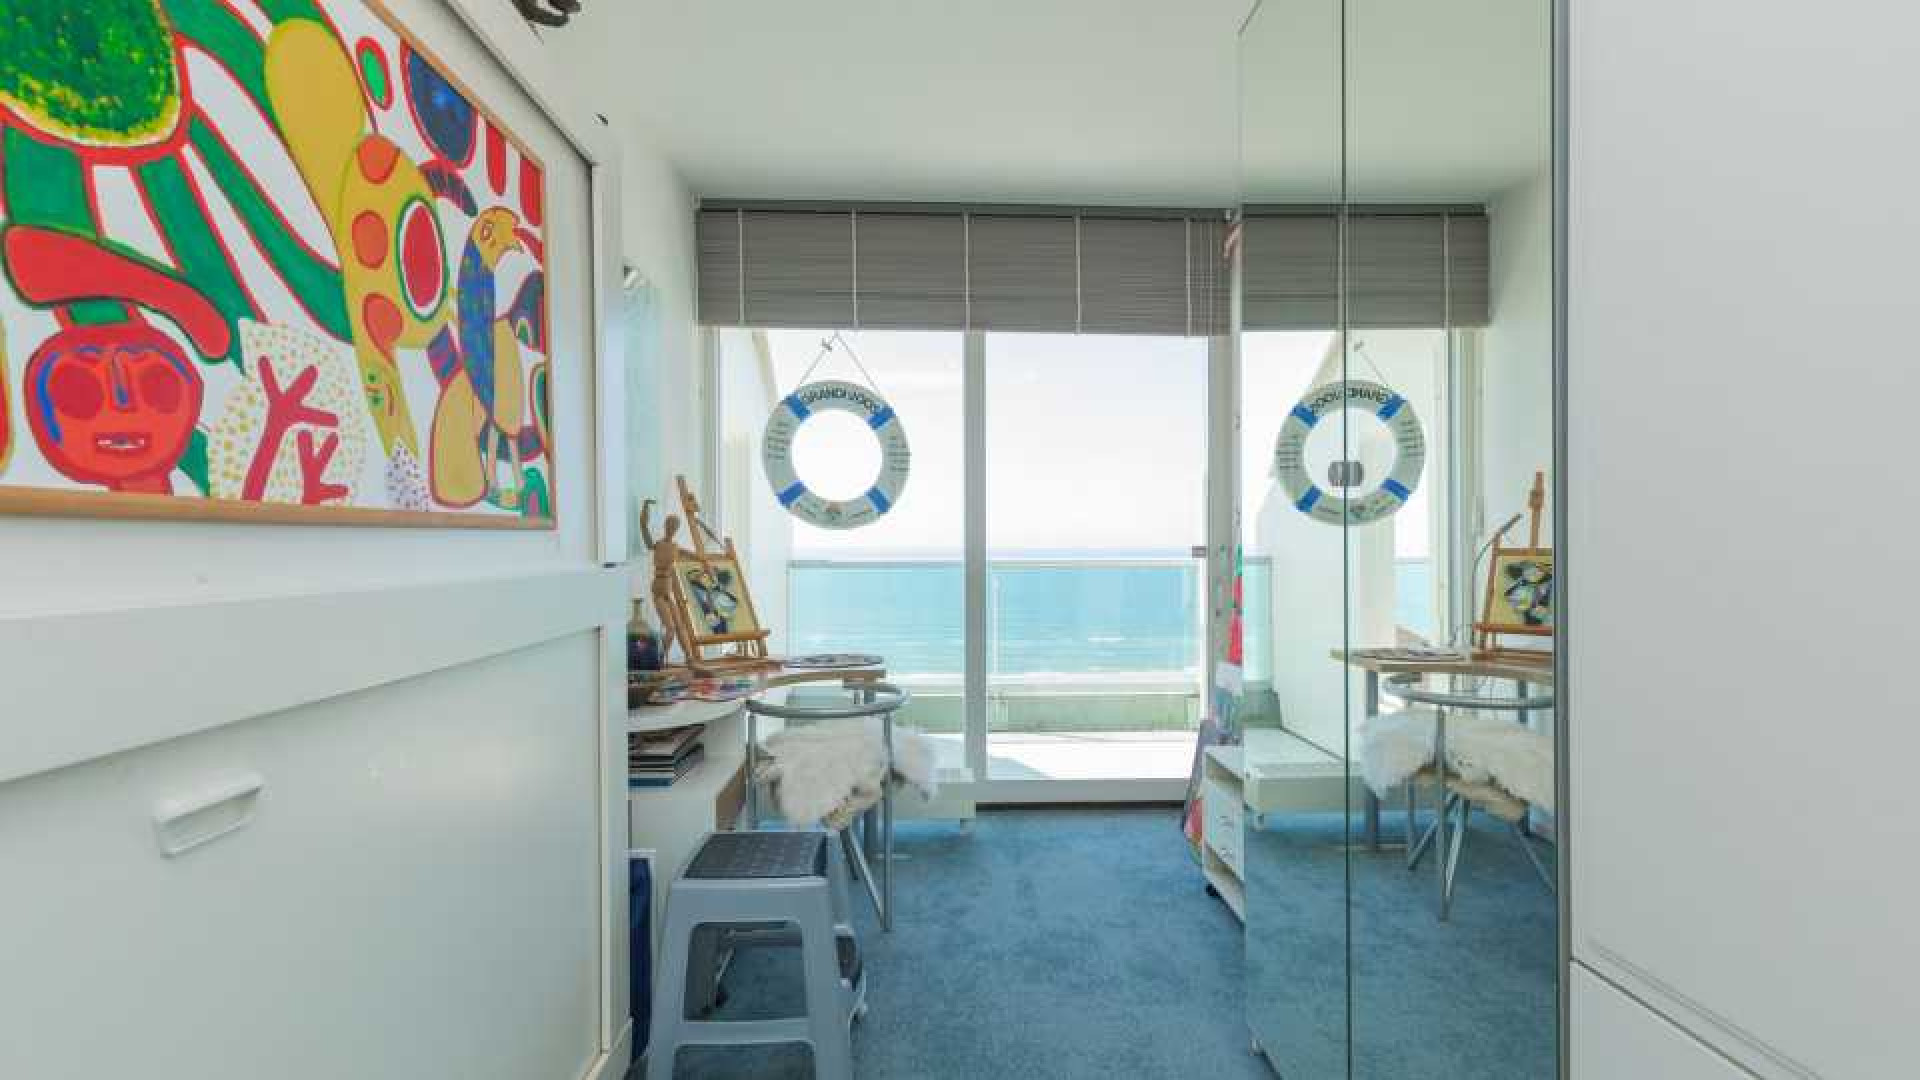 Binnenkijken in dit prachtige penthouse met zeezicht van Ronald Koeman. Zie foto's 11